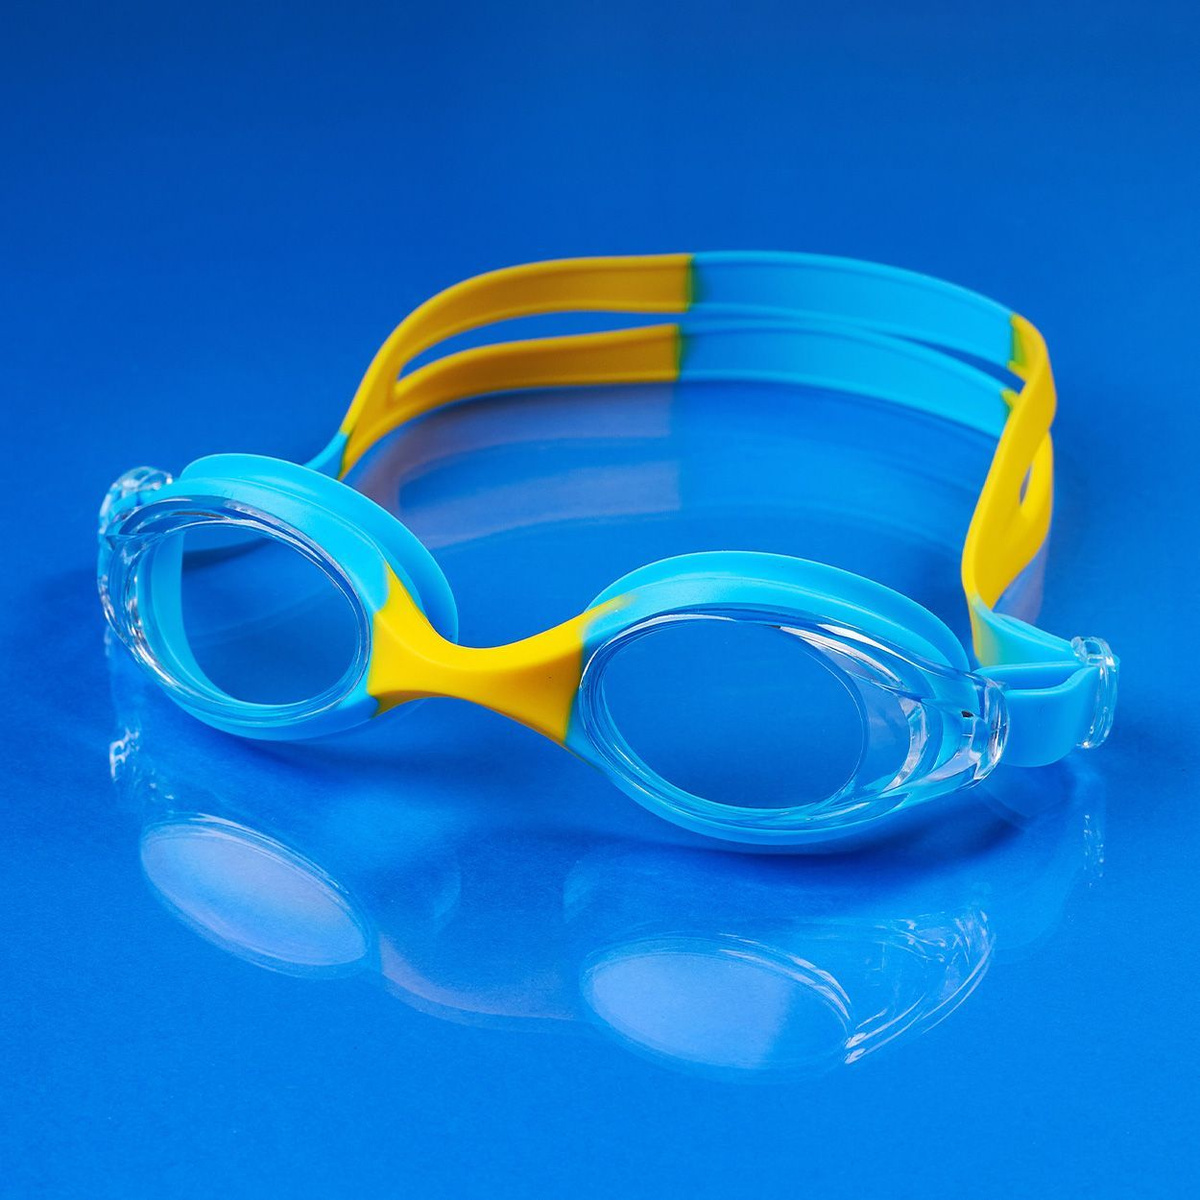 Очки для плавания от бренда 25Degrees